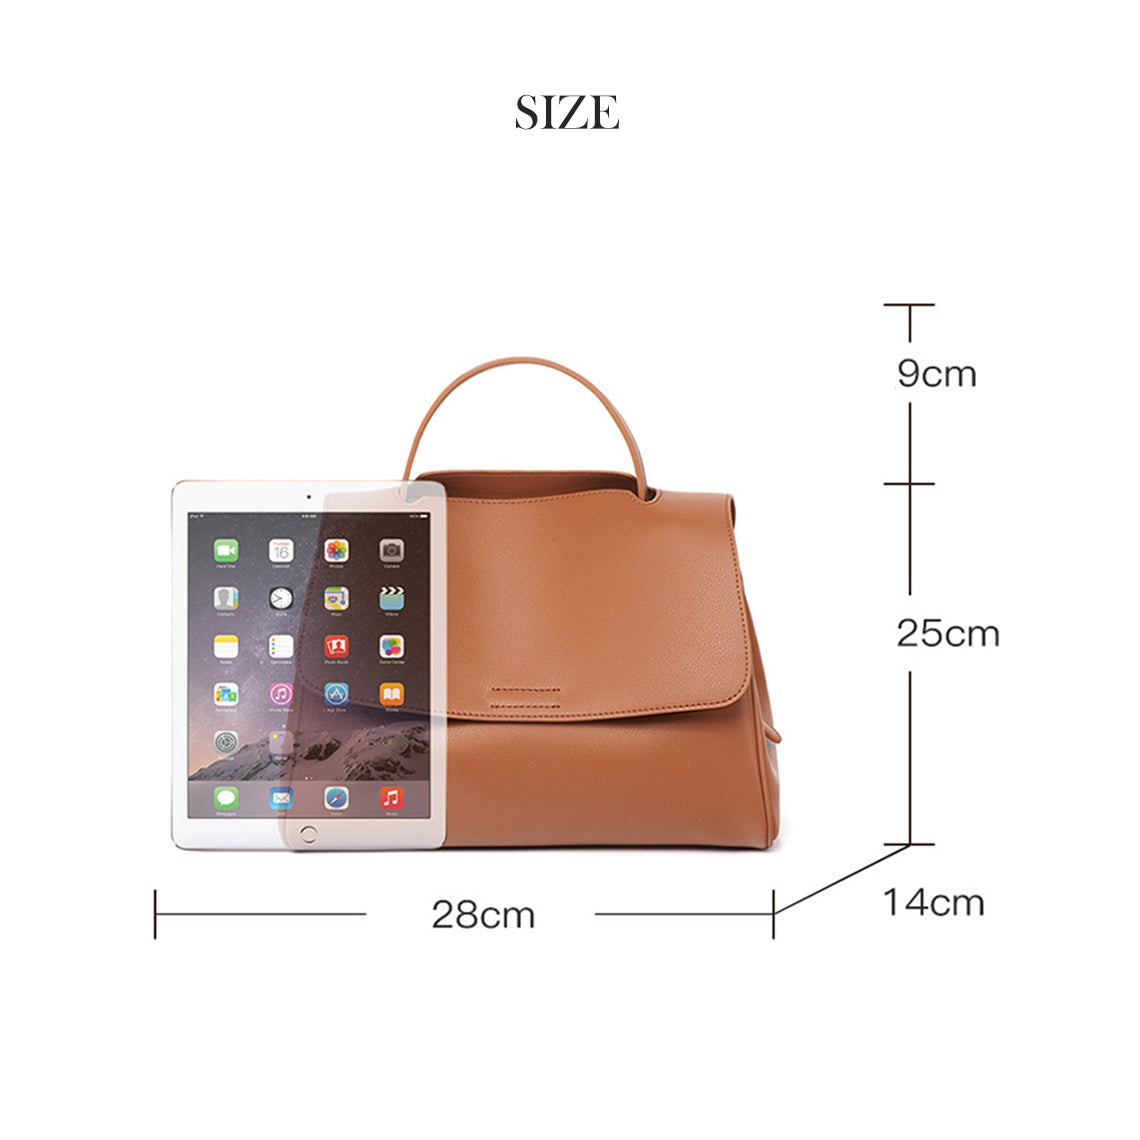 Brown Leather Satchel Handbag Size | POPSEWING™